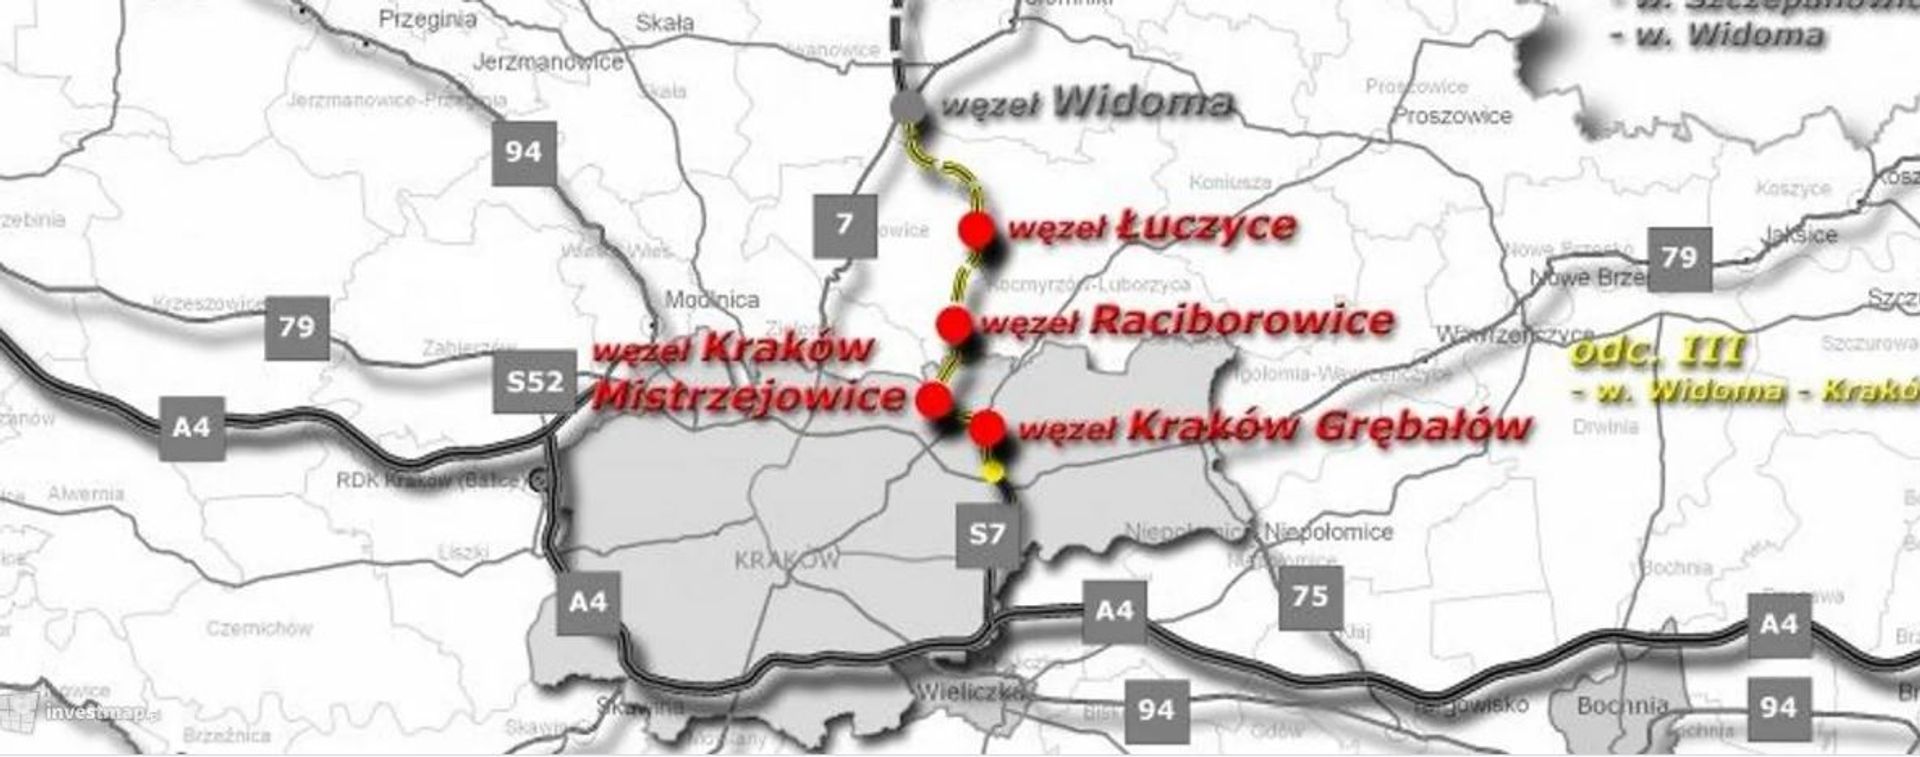 Powstaje Wschodnia Obwodnica Krakowa, czyli krakowski odcinek drogi ekspresowej S7 